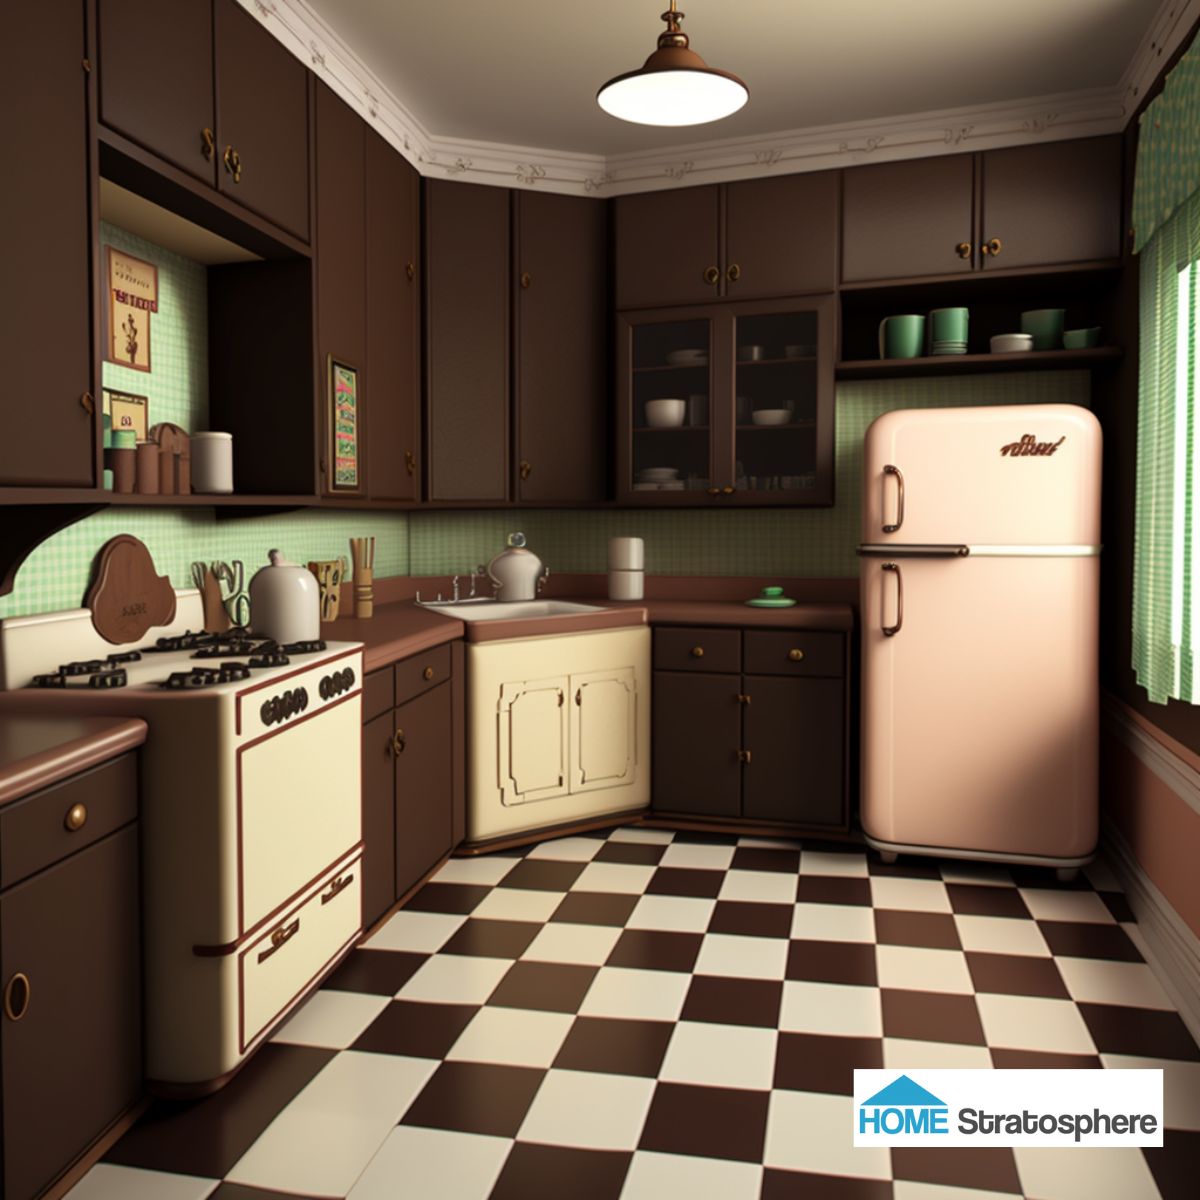 深棕色的橱柜和柜台形成了质朴的背景，而墙壁图案上的一点蓝绿色和冰箱上的浅粉色增添了复古的风格。倾斜的布局留下了充足的开放空间，这将是一个完美的厨房岛。